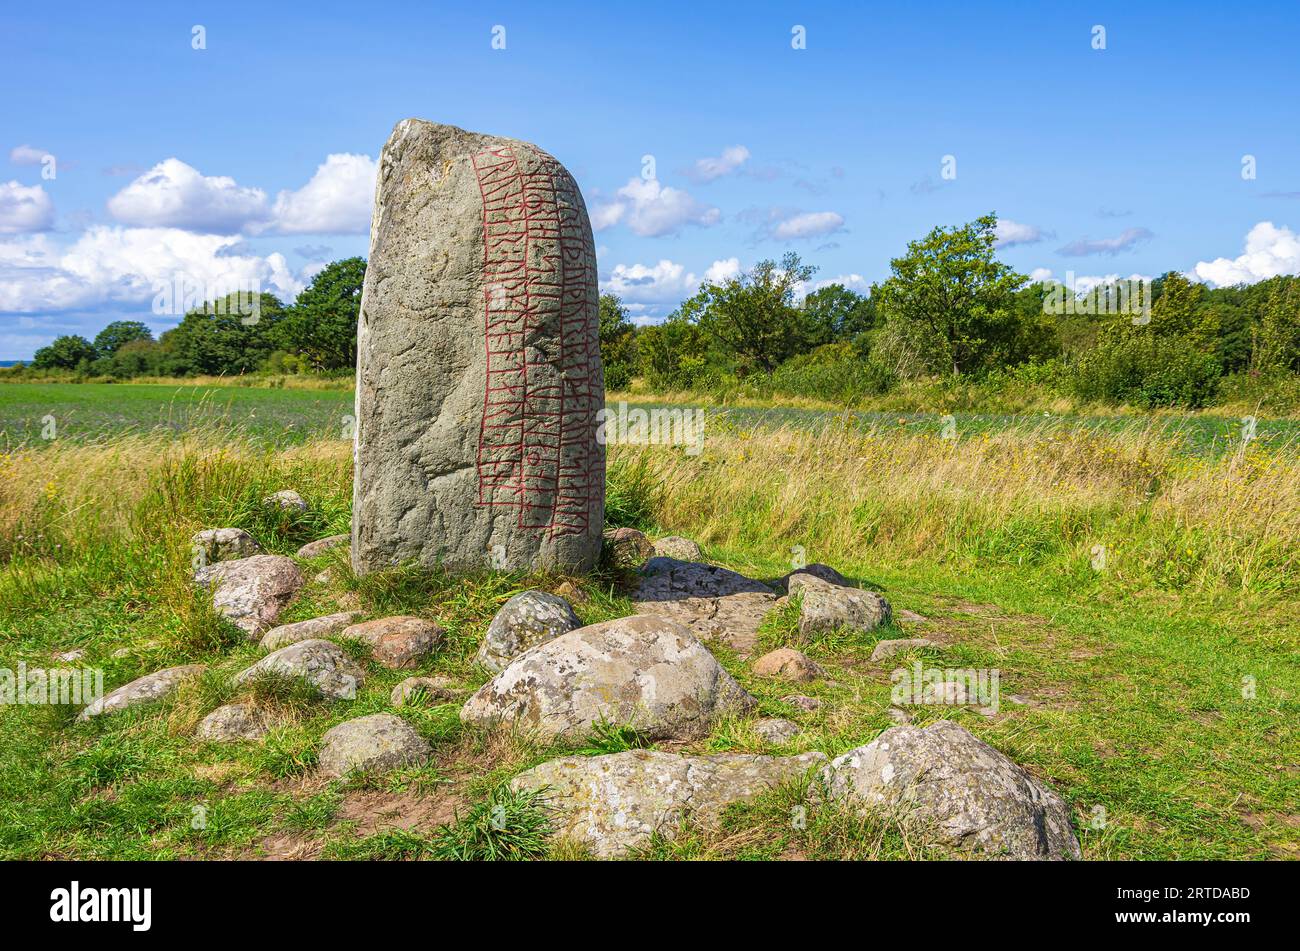 Der alte Karlevi-Runenstein, auch Karlevi-Stein genannt, liegt außerhalb des Dorfes Färjestaden, Öland Island, Kalmar County, Schweden. Stockfoto